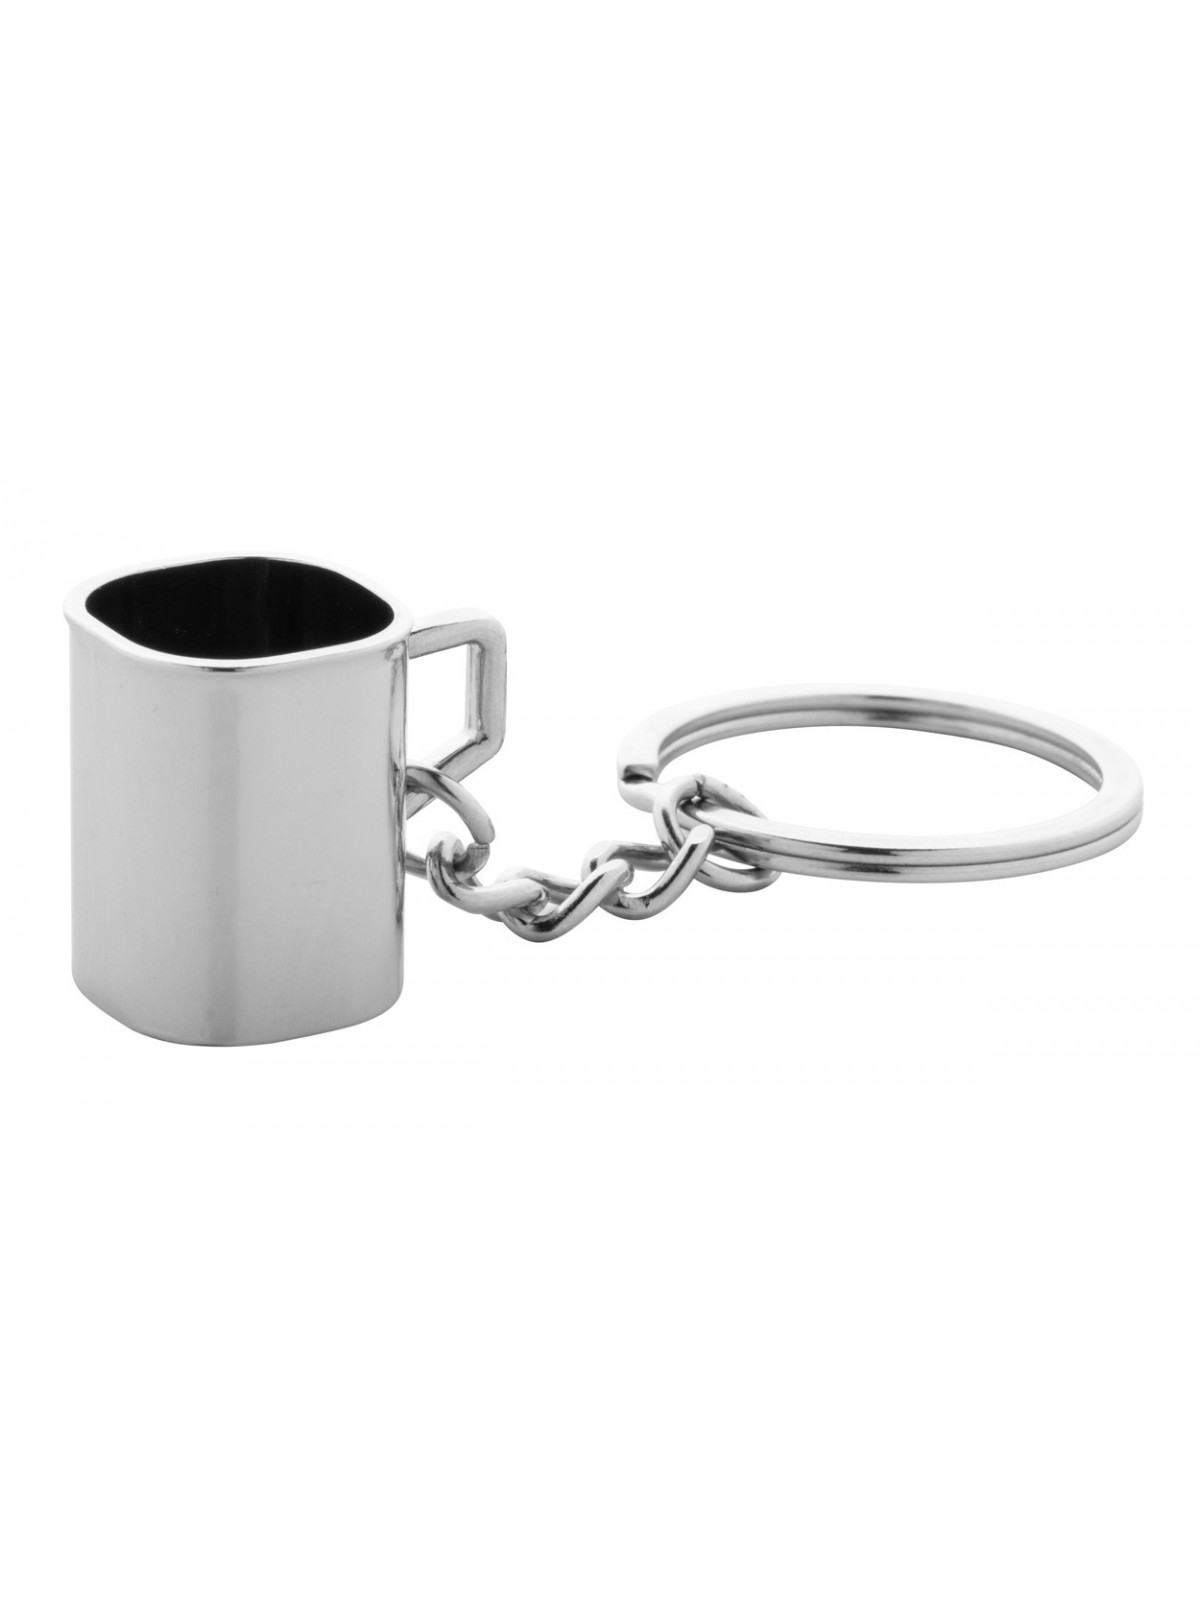 10-670 Porte-clés mug  personnalisé